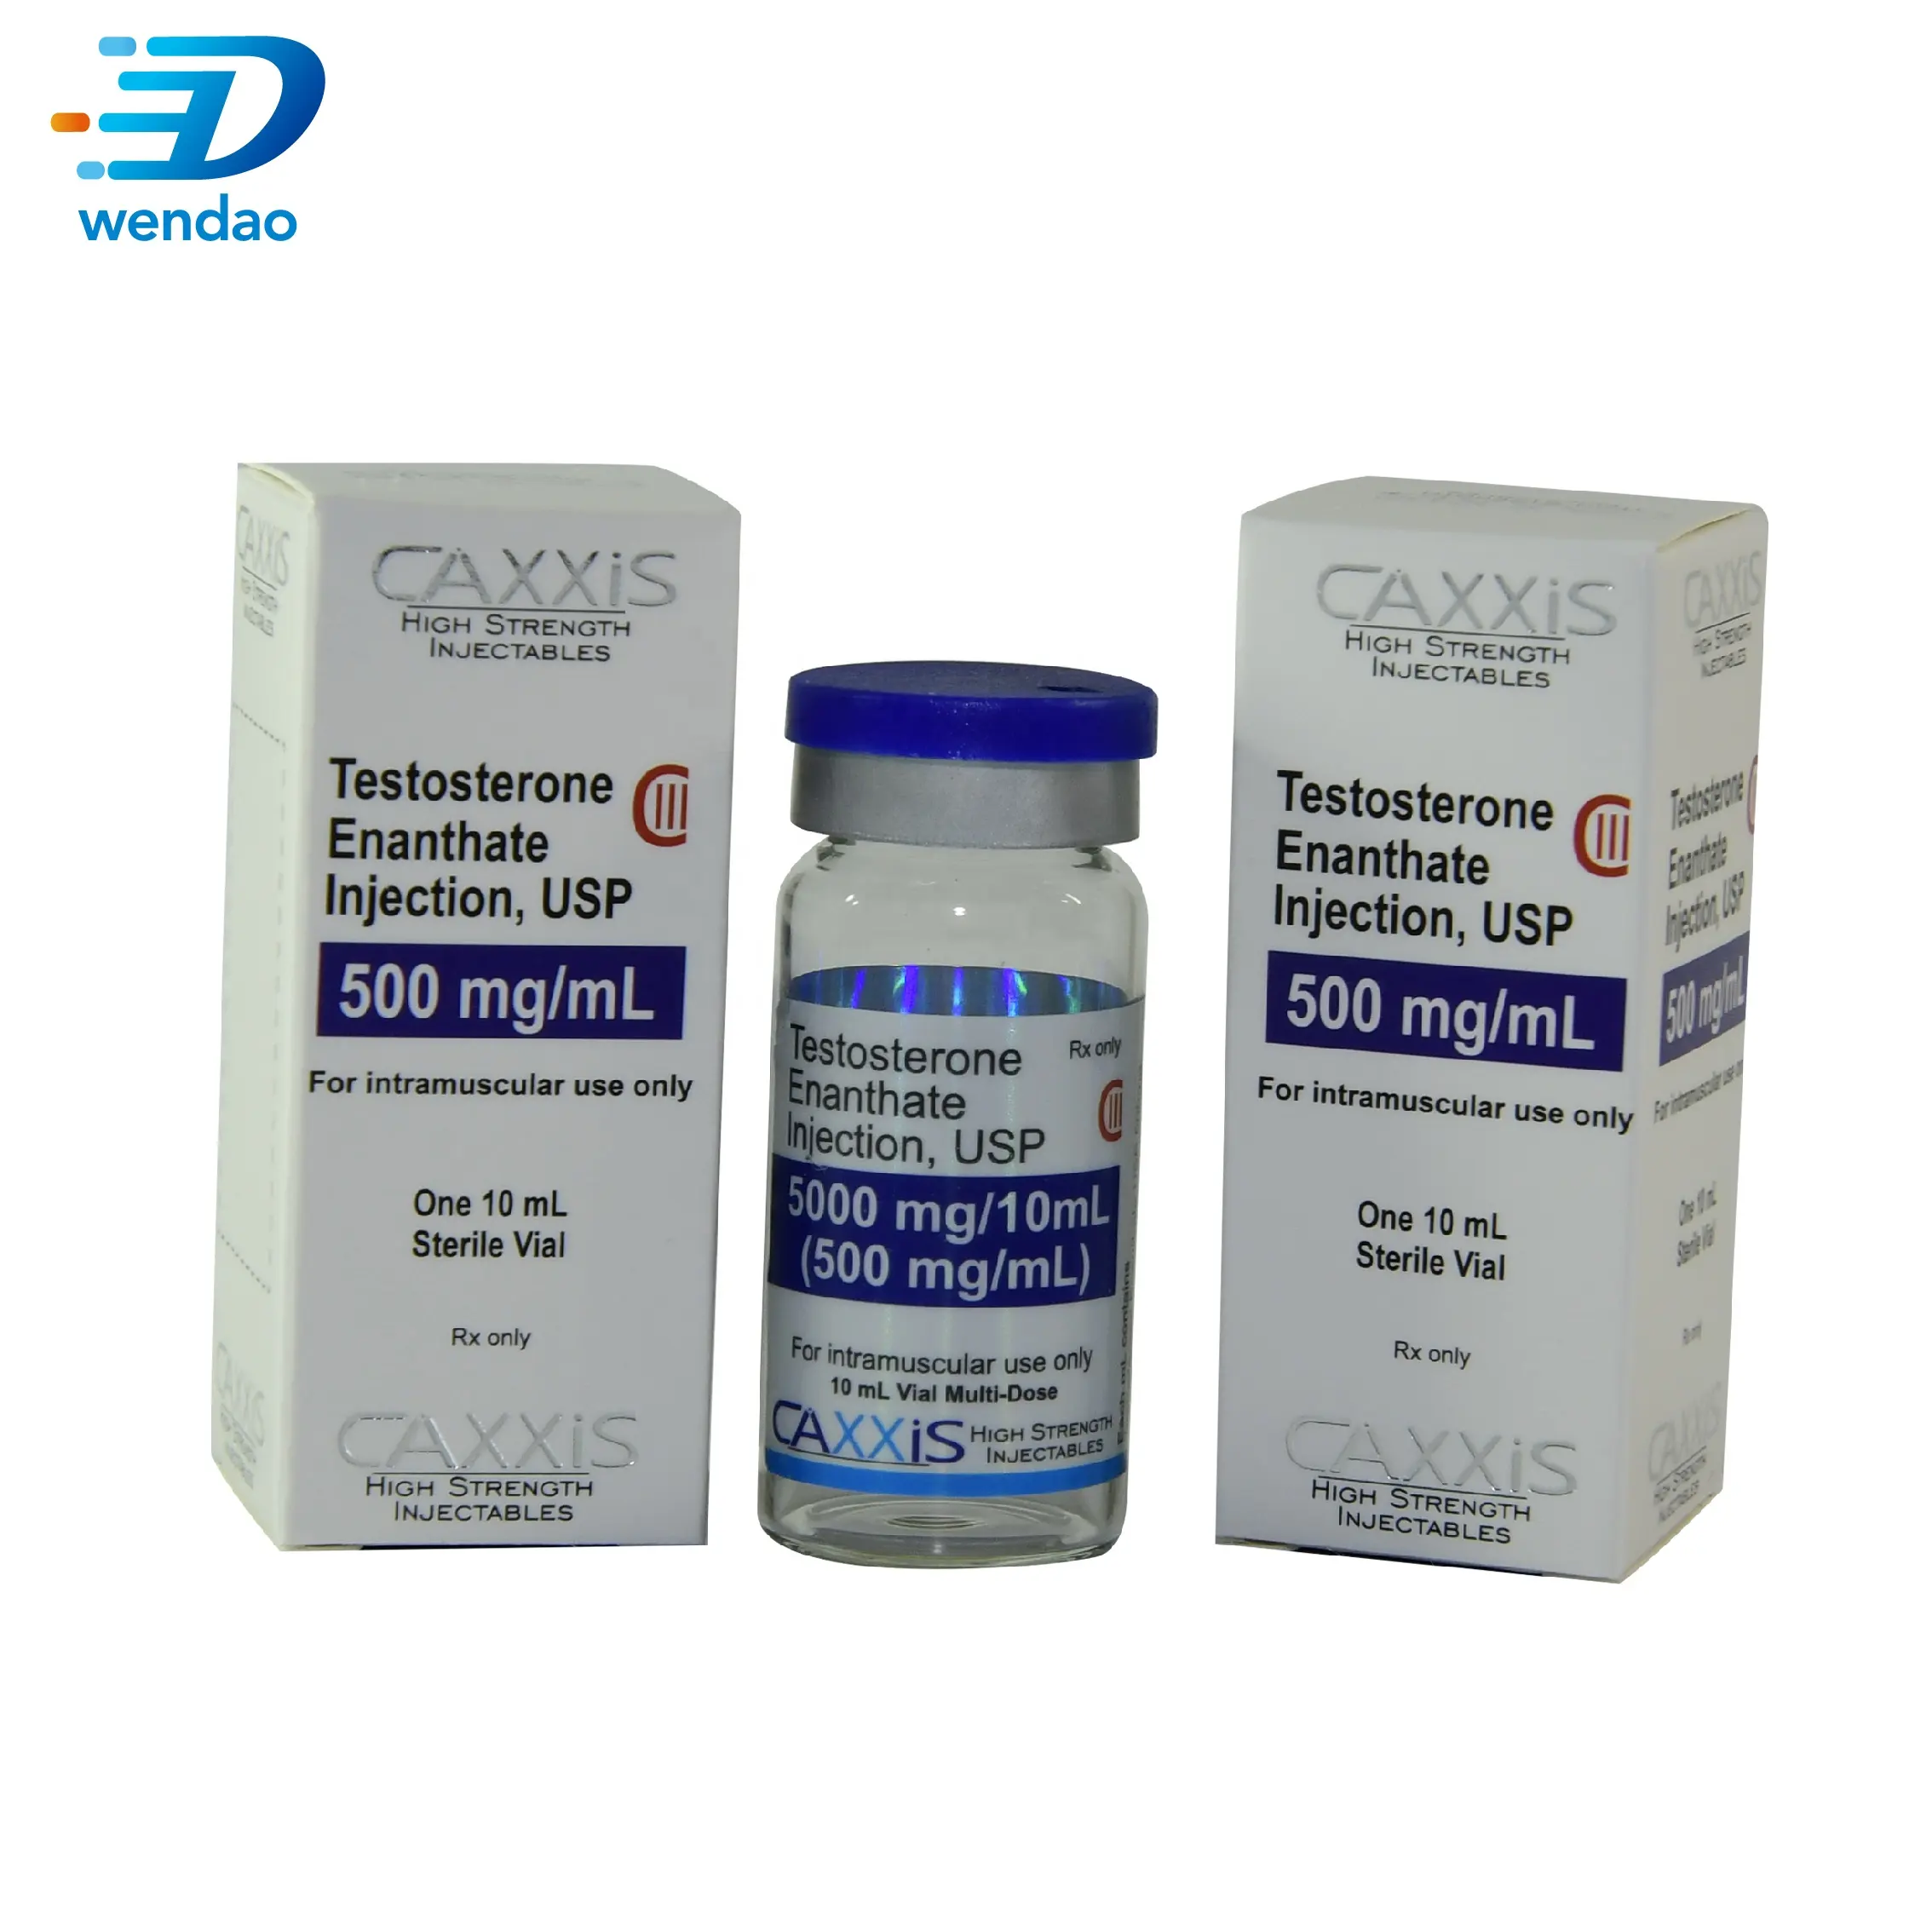 Ilaç su geçirmez Testosterona enjeksiyon vücut geliştirme 10ml flakon etiket ve parlak kutu ambalaj